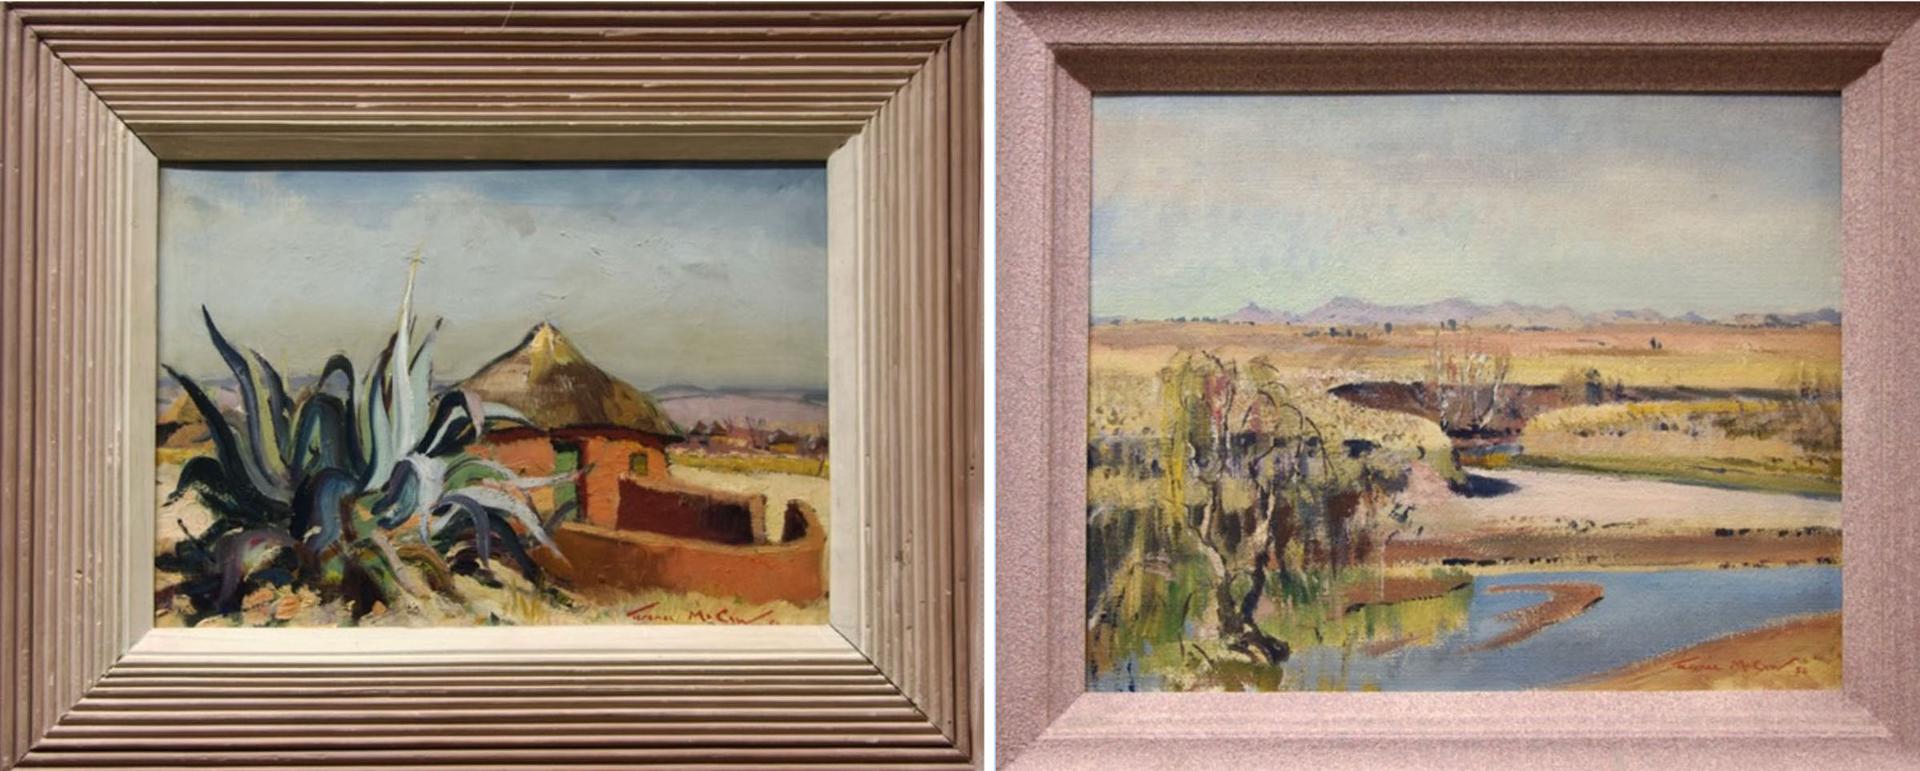 Terence John McCaw - Desert Landscape Studies